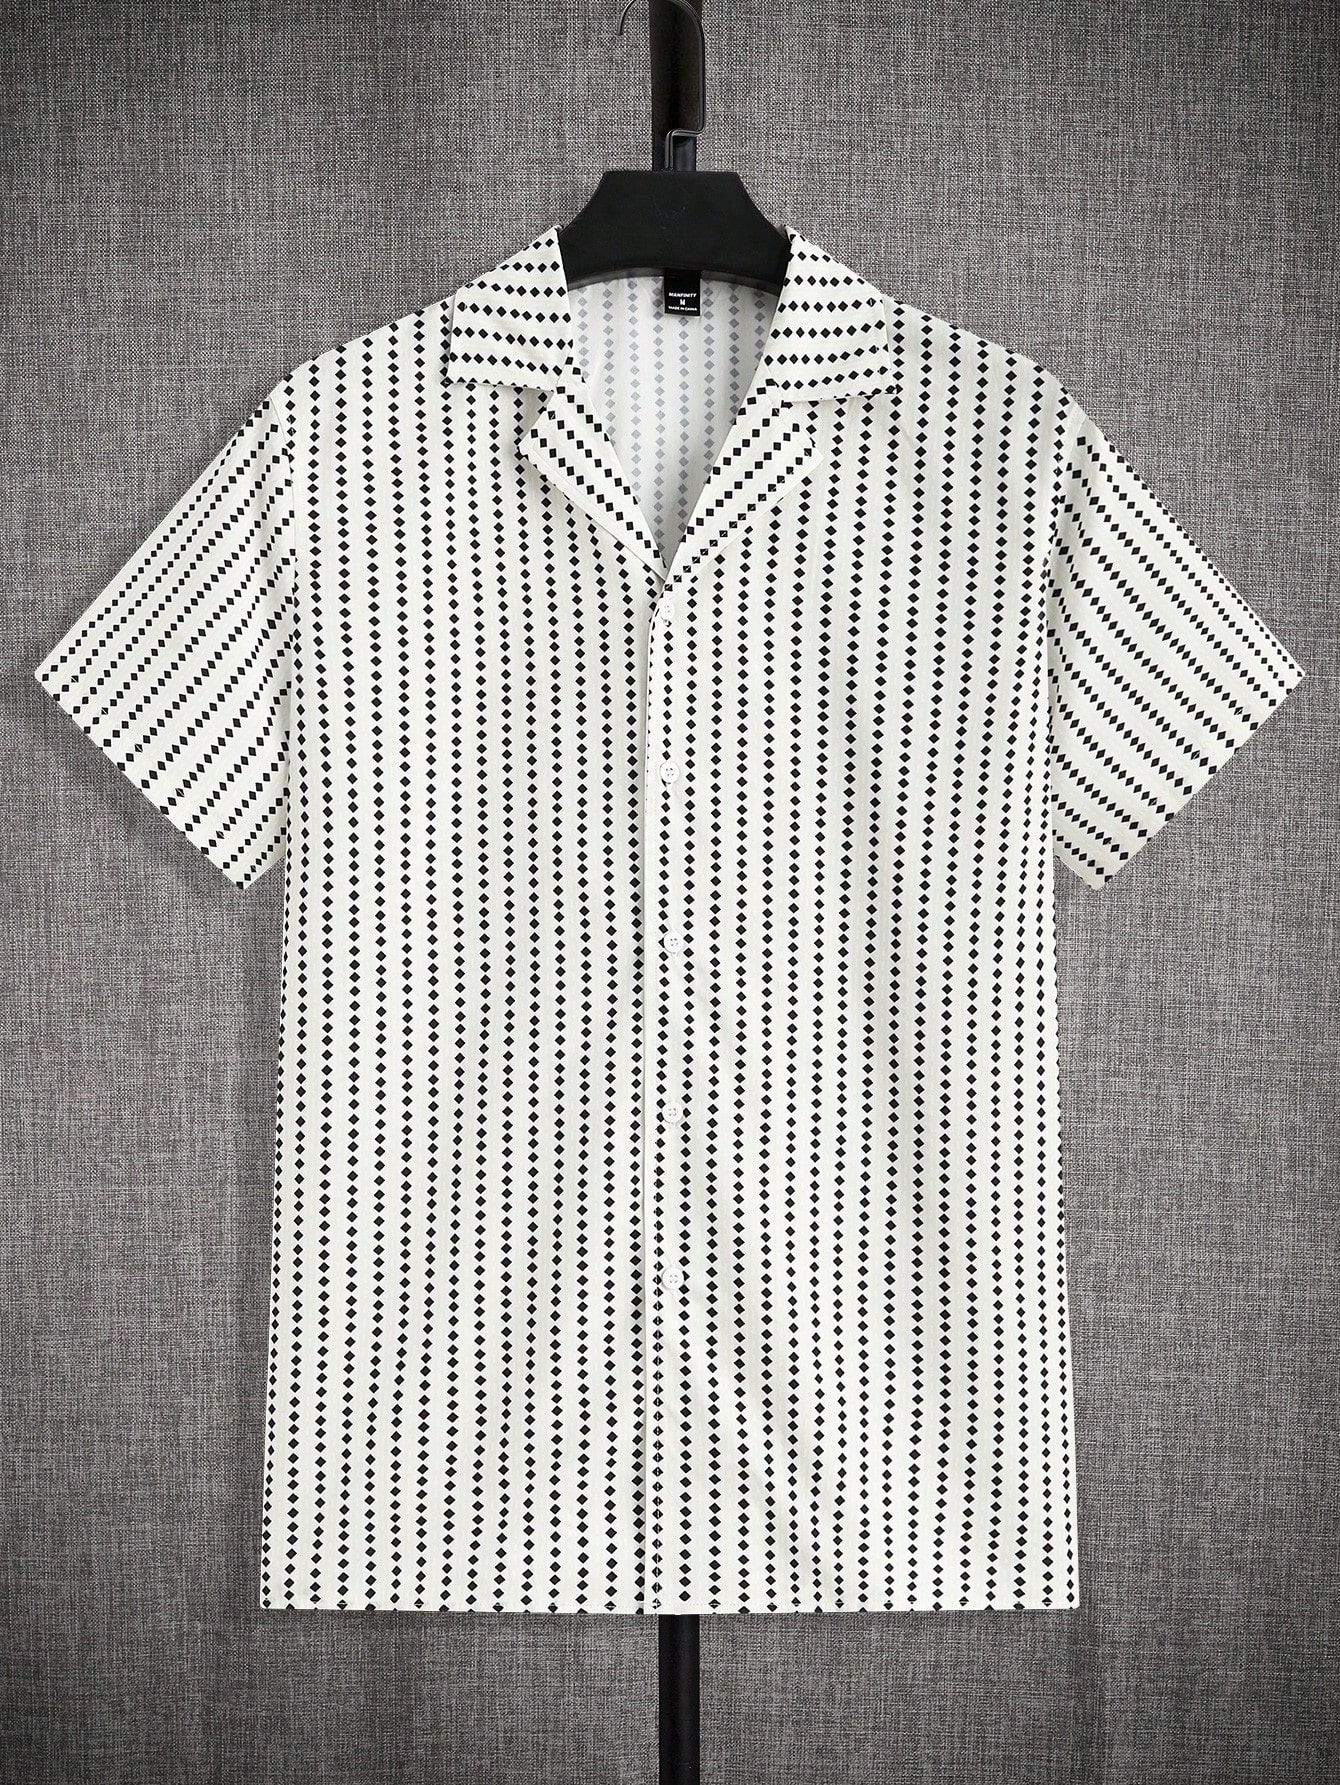 Мужская повседневная рубашка с коротким рукавом Manfinity Homme из тканого геометрического принта, многоцветный цена и фото